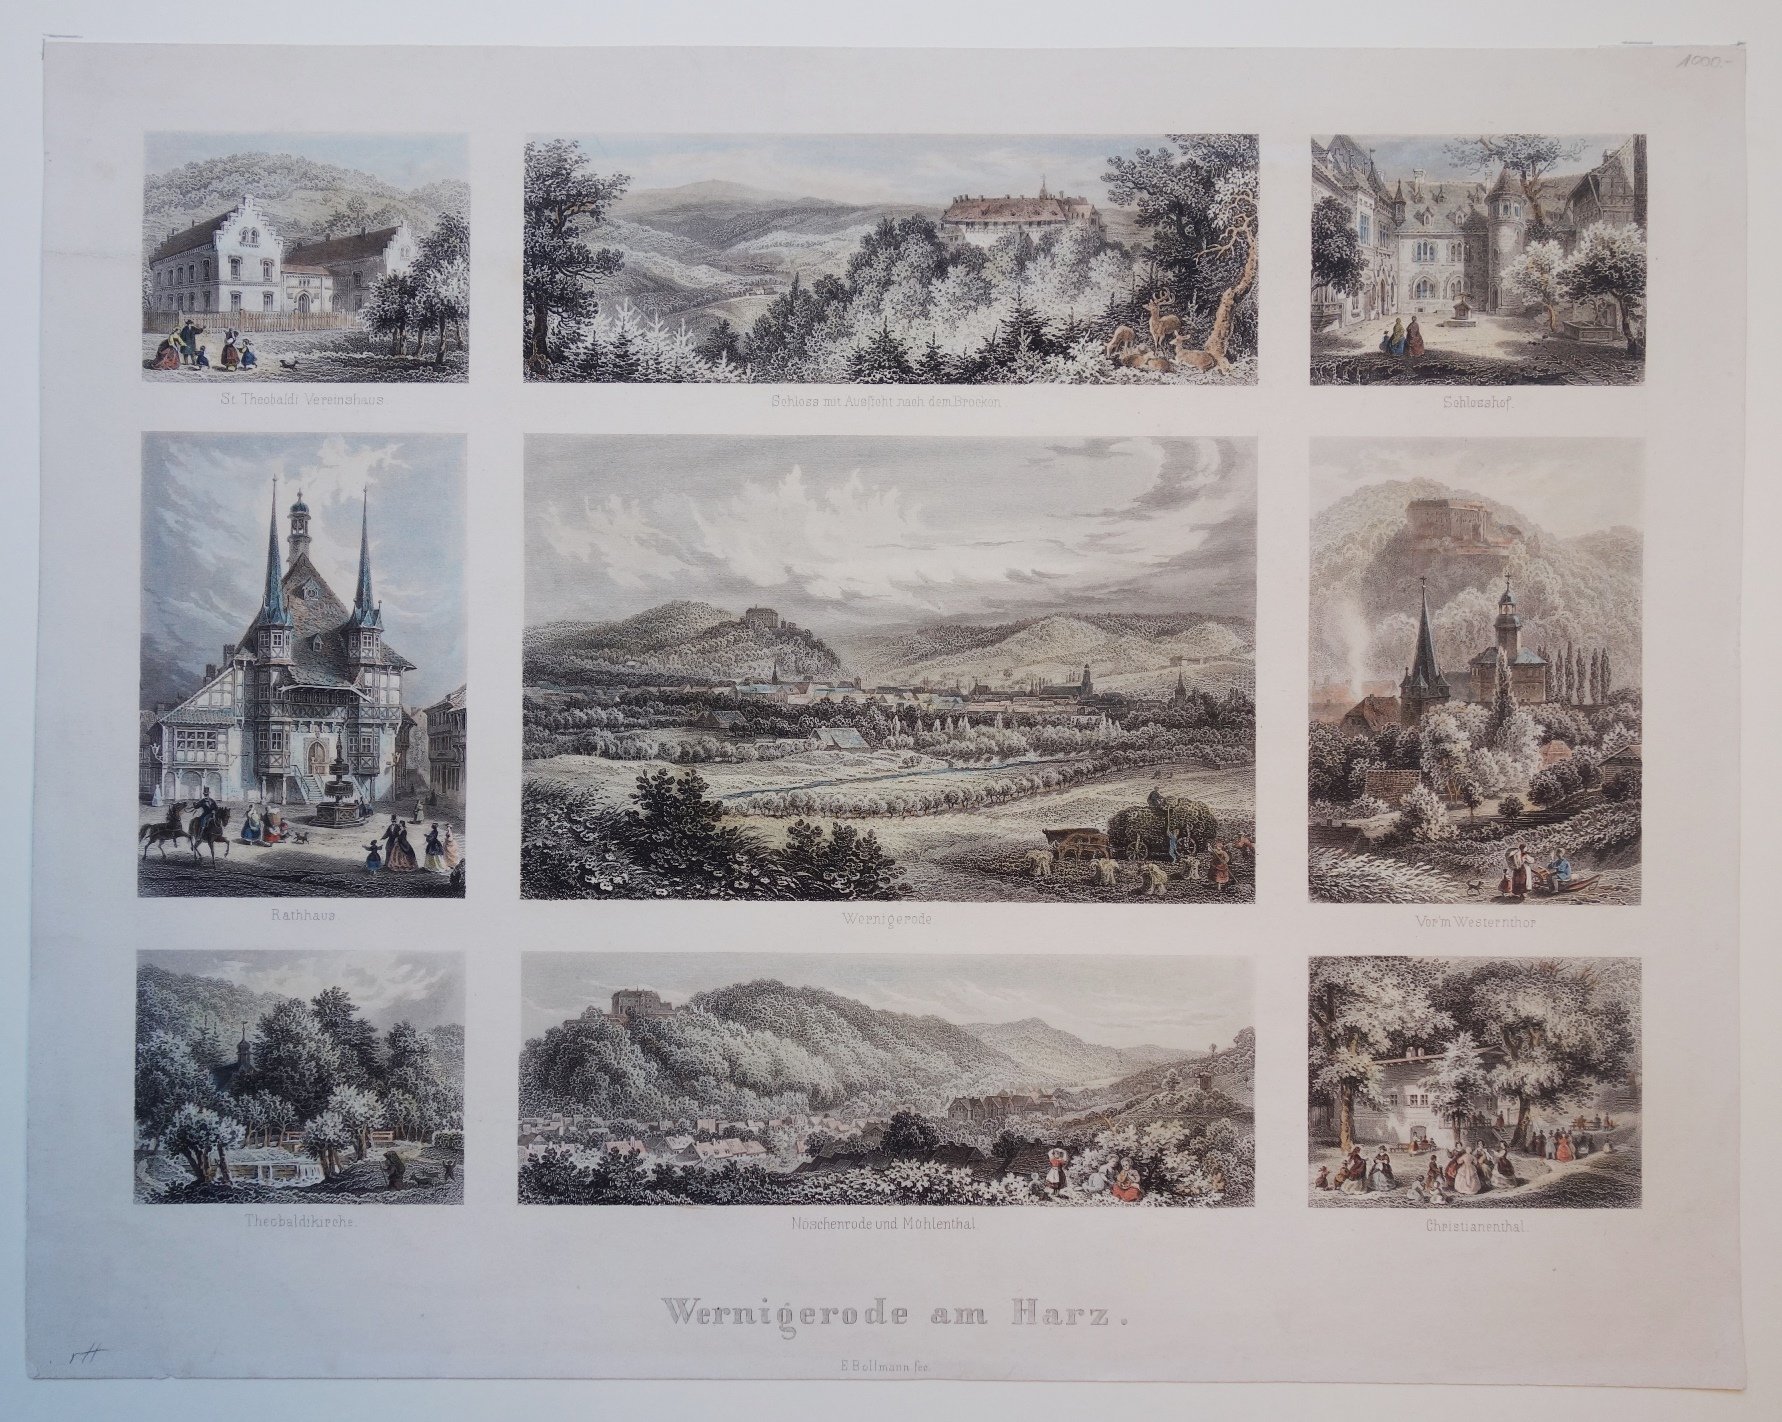 Wernigerode: Souvenirblatt mit neun Ansichten, um von Wernigerode um 1850 (Schloß Wernigerode GmbH RR-F)